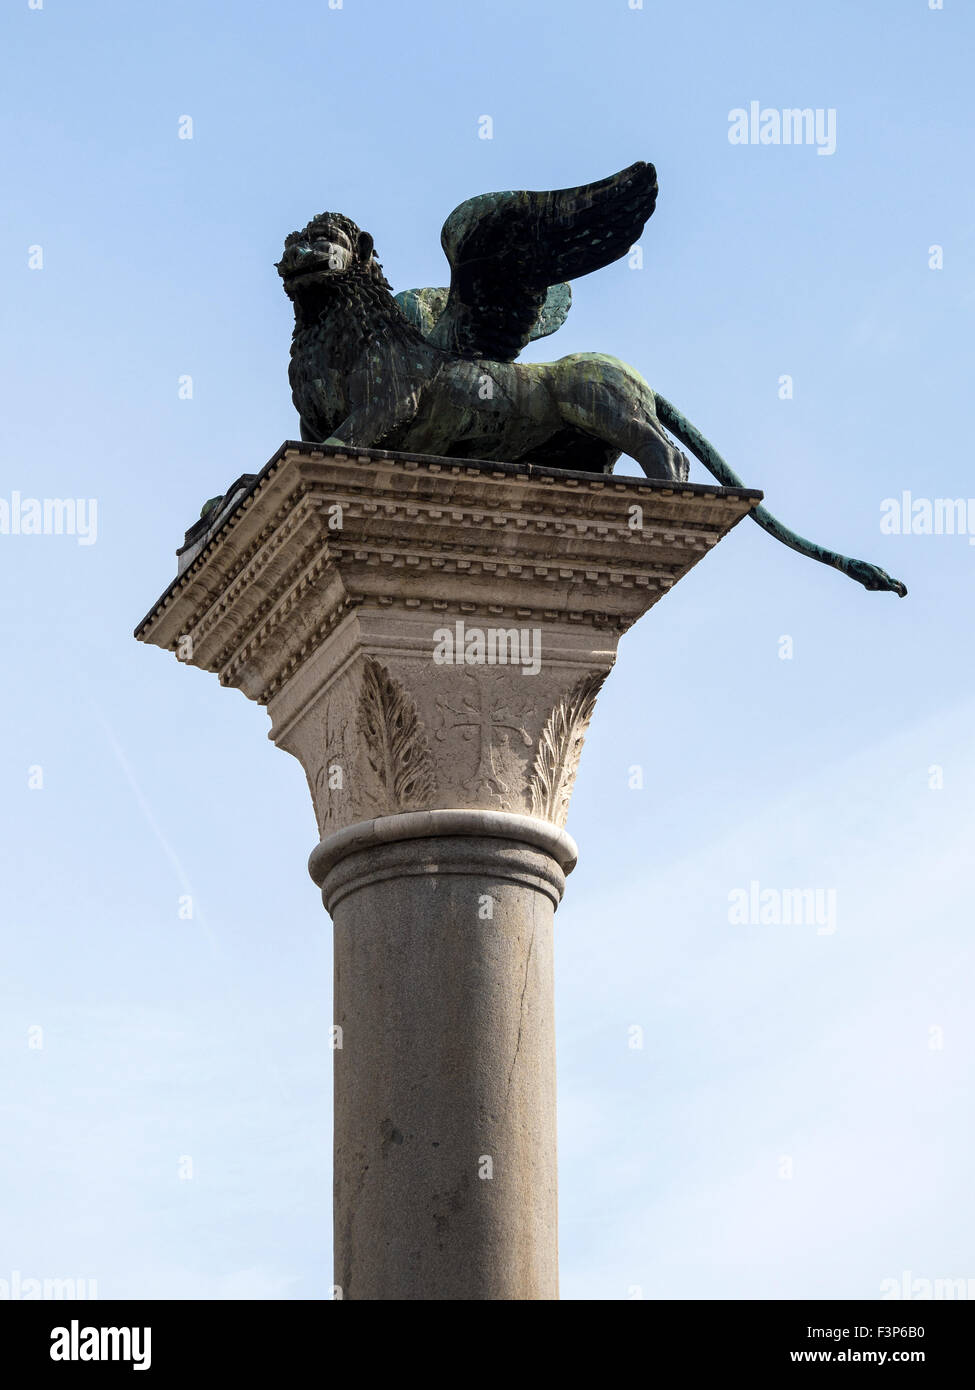 VENEZIA, ITALIA - 05 MAGGIO 2015: Il Leone di Venezia - scultura di leone alare sulla colonna di Piazza San Marco Foto Stock